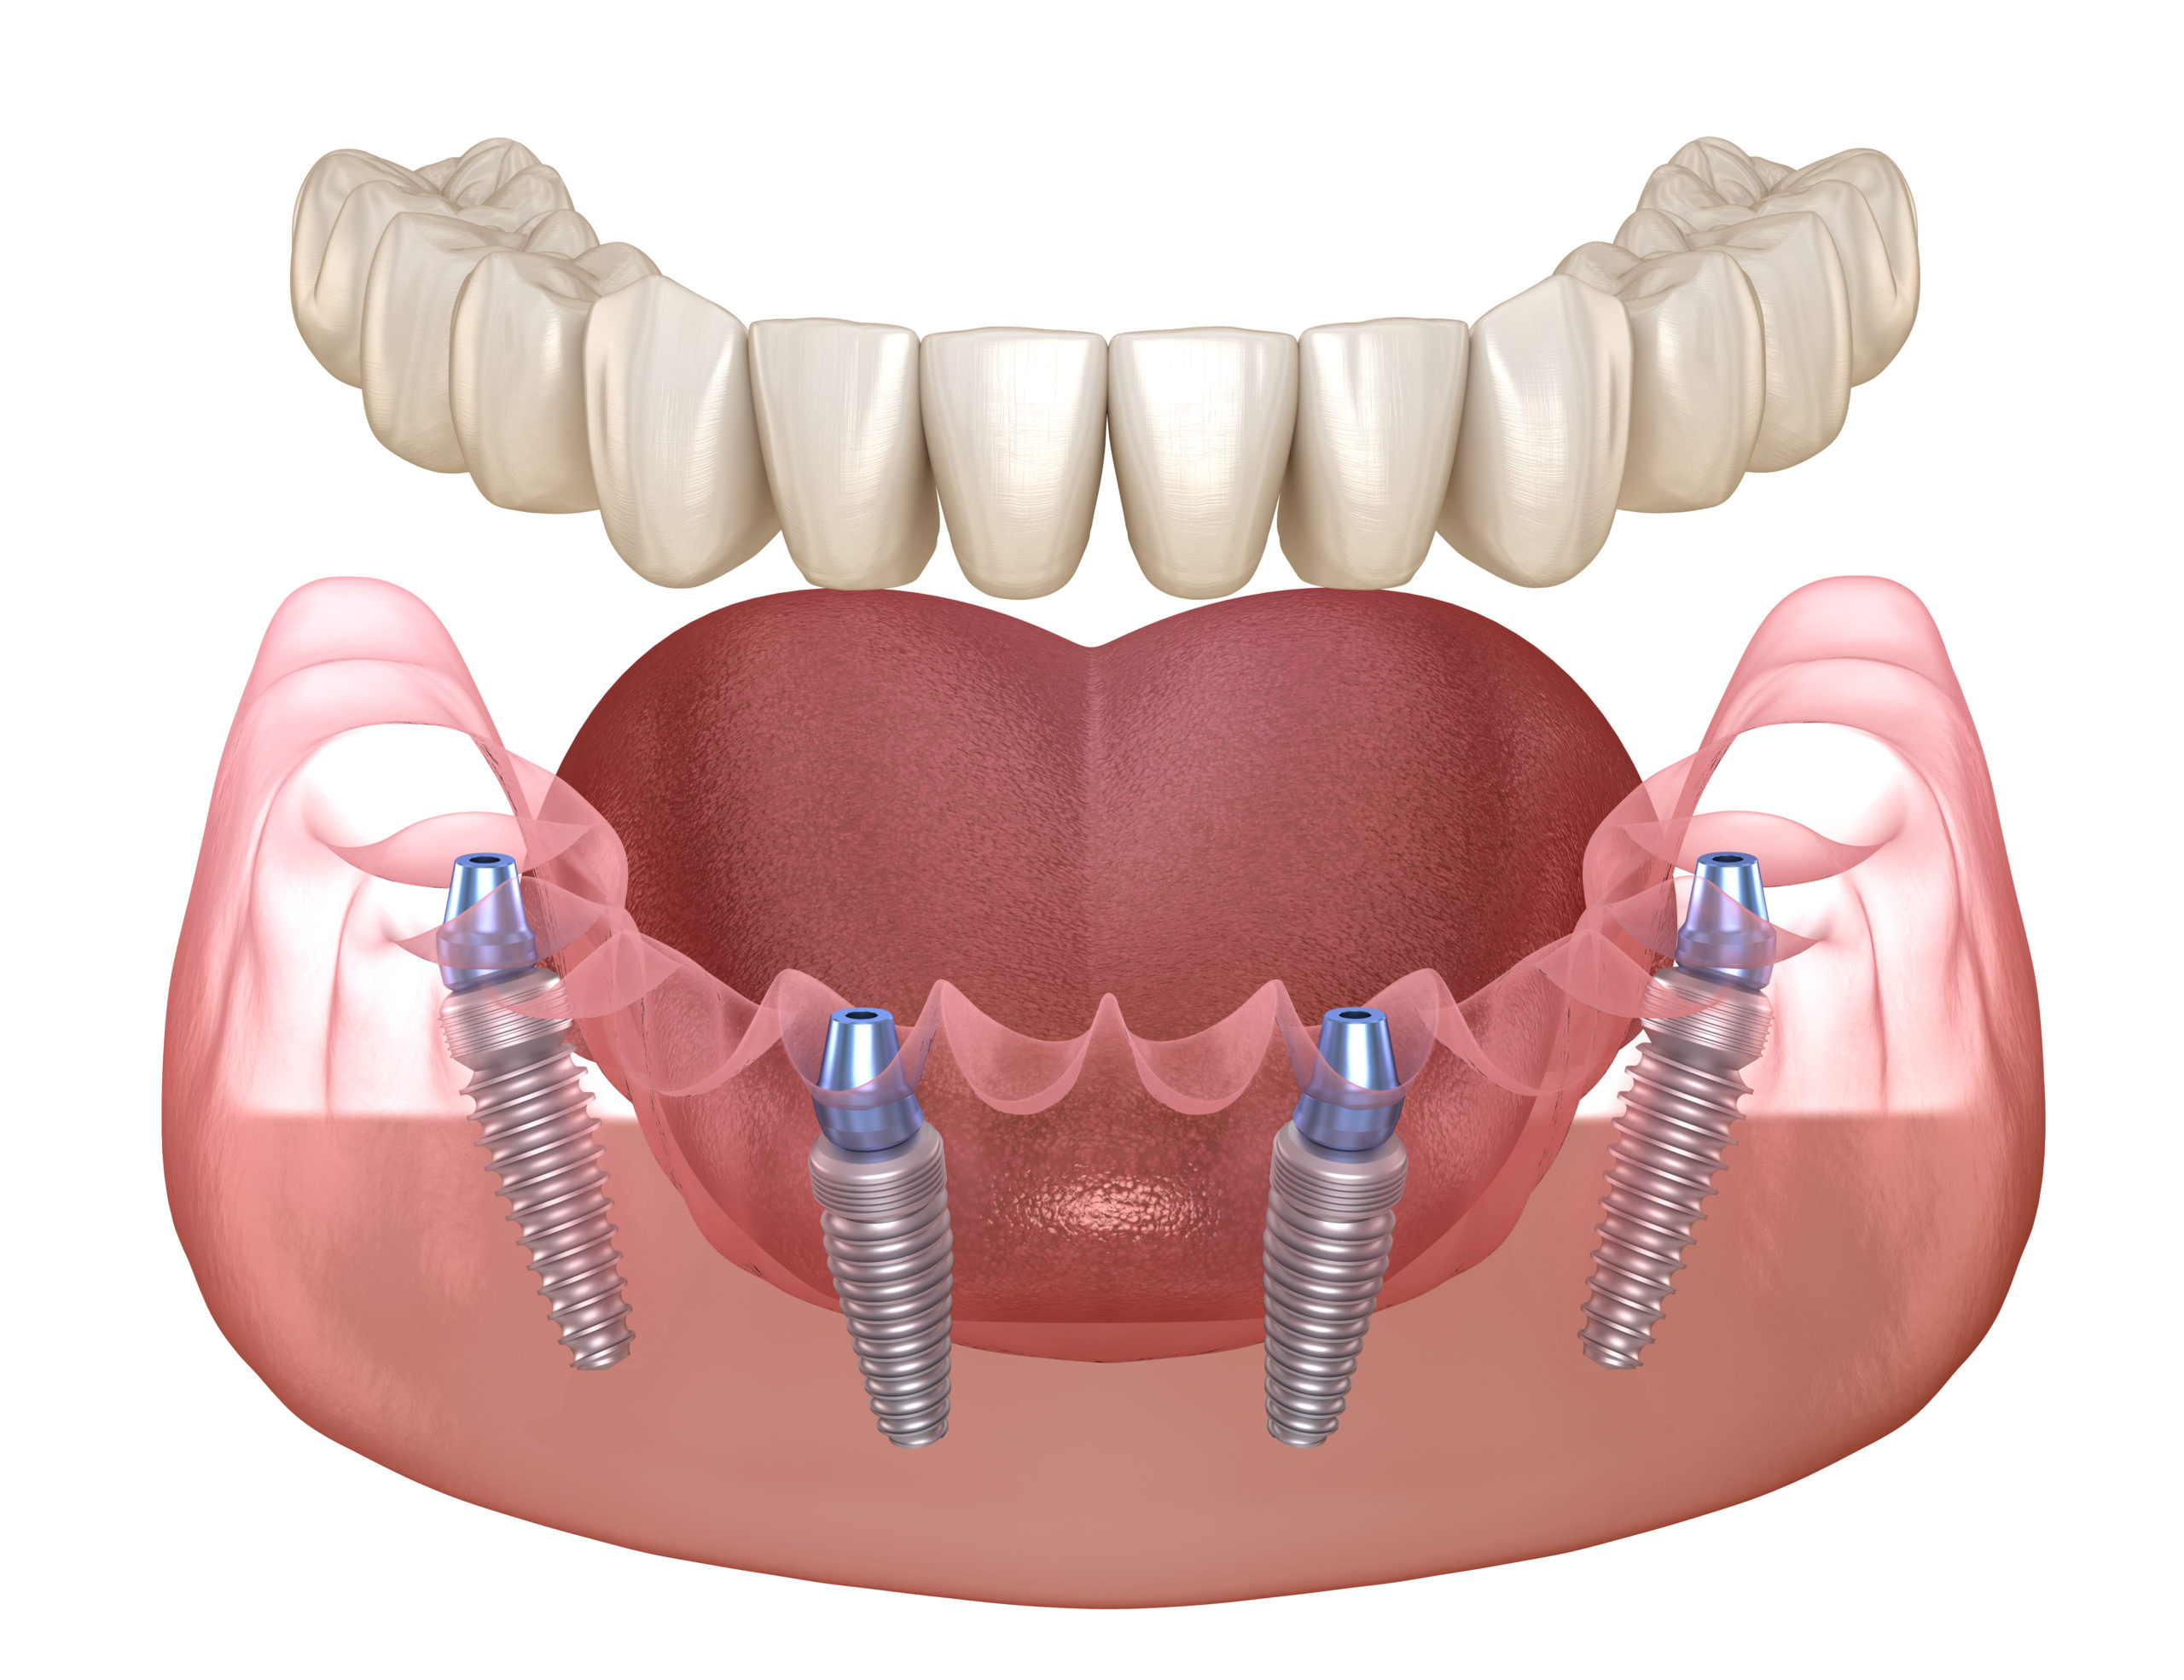 Протез на имплантах при полном отсутствии. Несъёмный зубной протез на 6 имплантах. Имплантация челюсти на 6 имплантах. Имплантация зубов all on 6. Имплантация all-on-6 (имплантация на 6 имплантах).